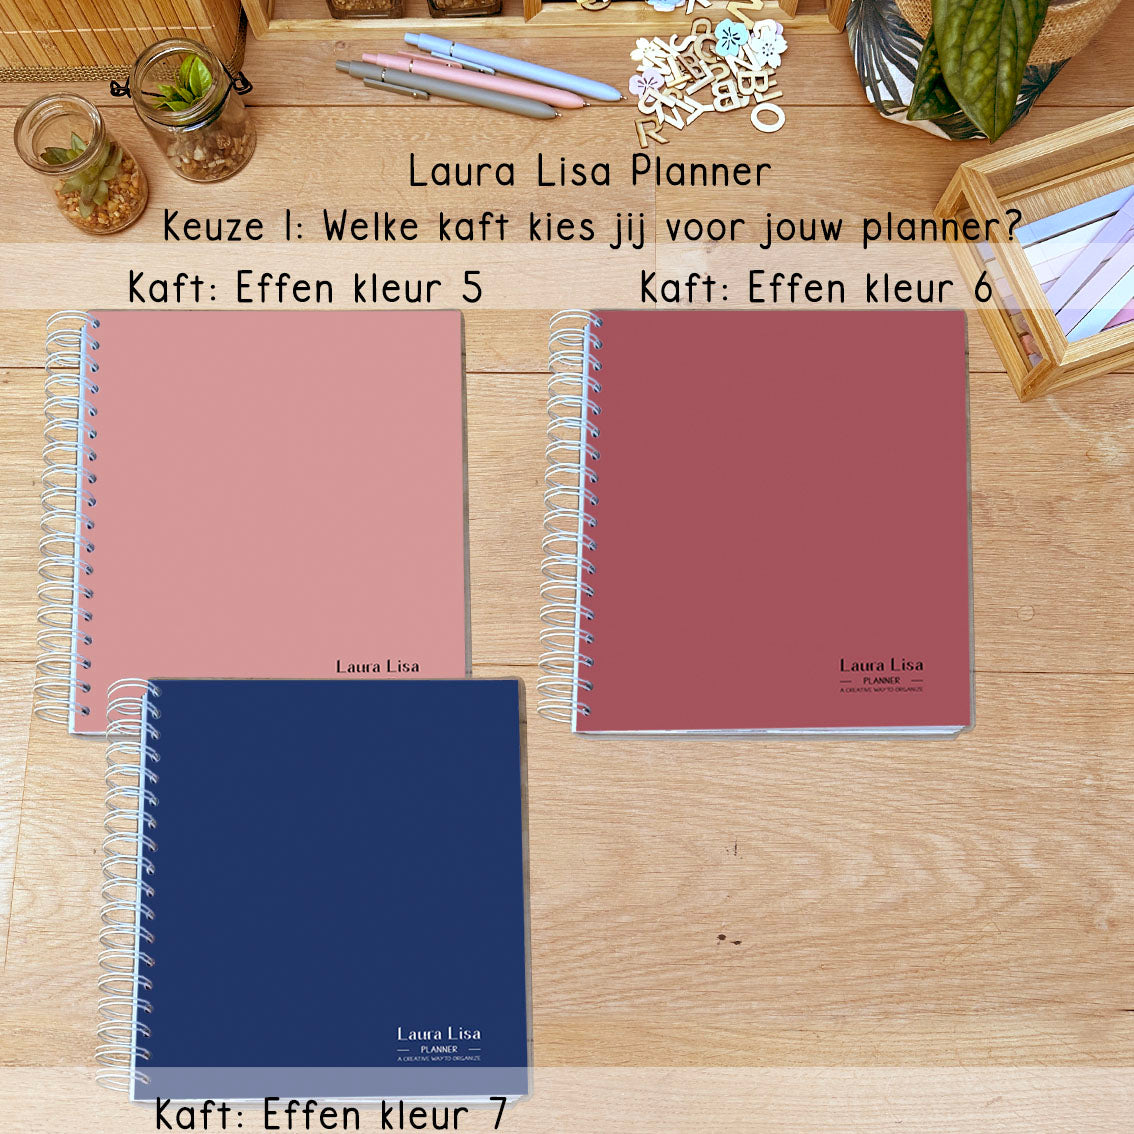 Ontdek onze nieuwe effen kaften voor de Laura Lisa schoonmaak Planner! Personaliseer je planner met kleuren die passen bij jouw stijl en voorkeuren. Welke kleur past het beste bij jou?